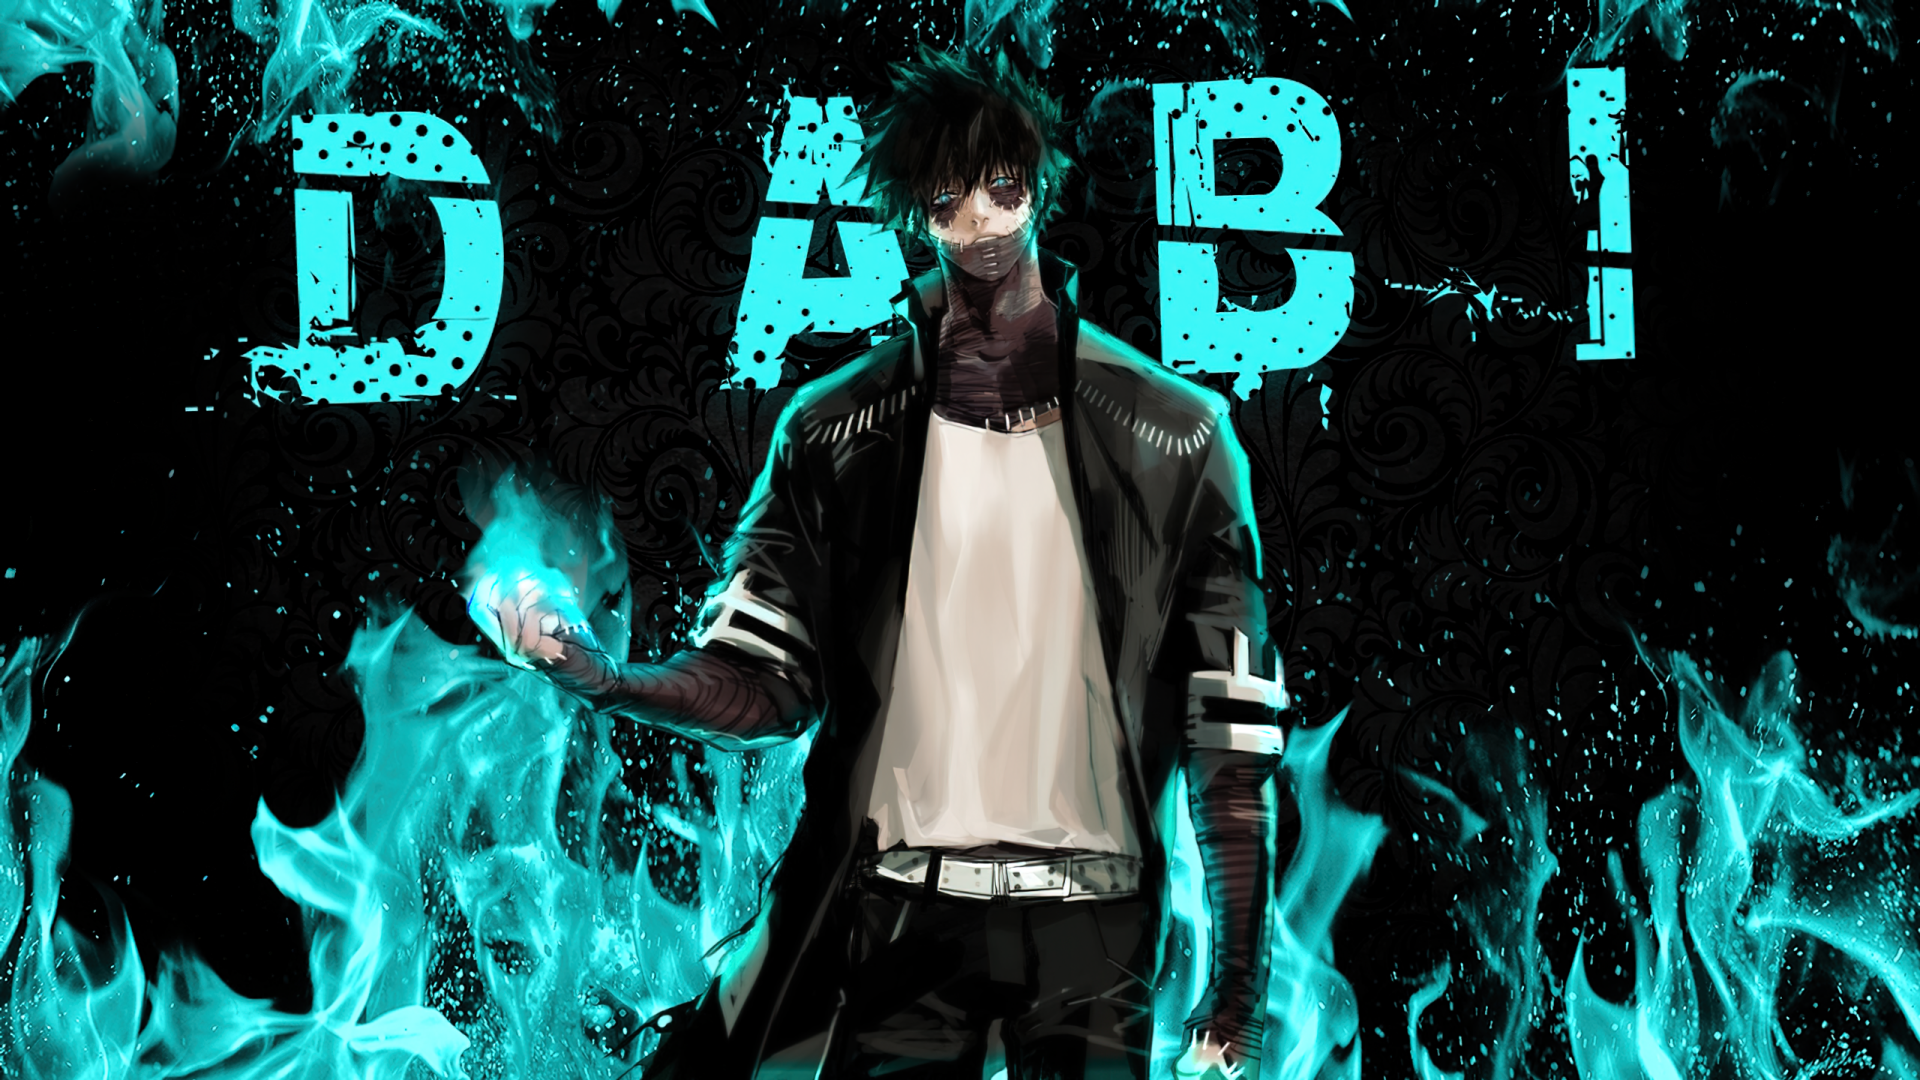 Bad boy cute anime boy HD wallpapers | Pxfuel